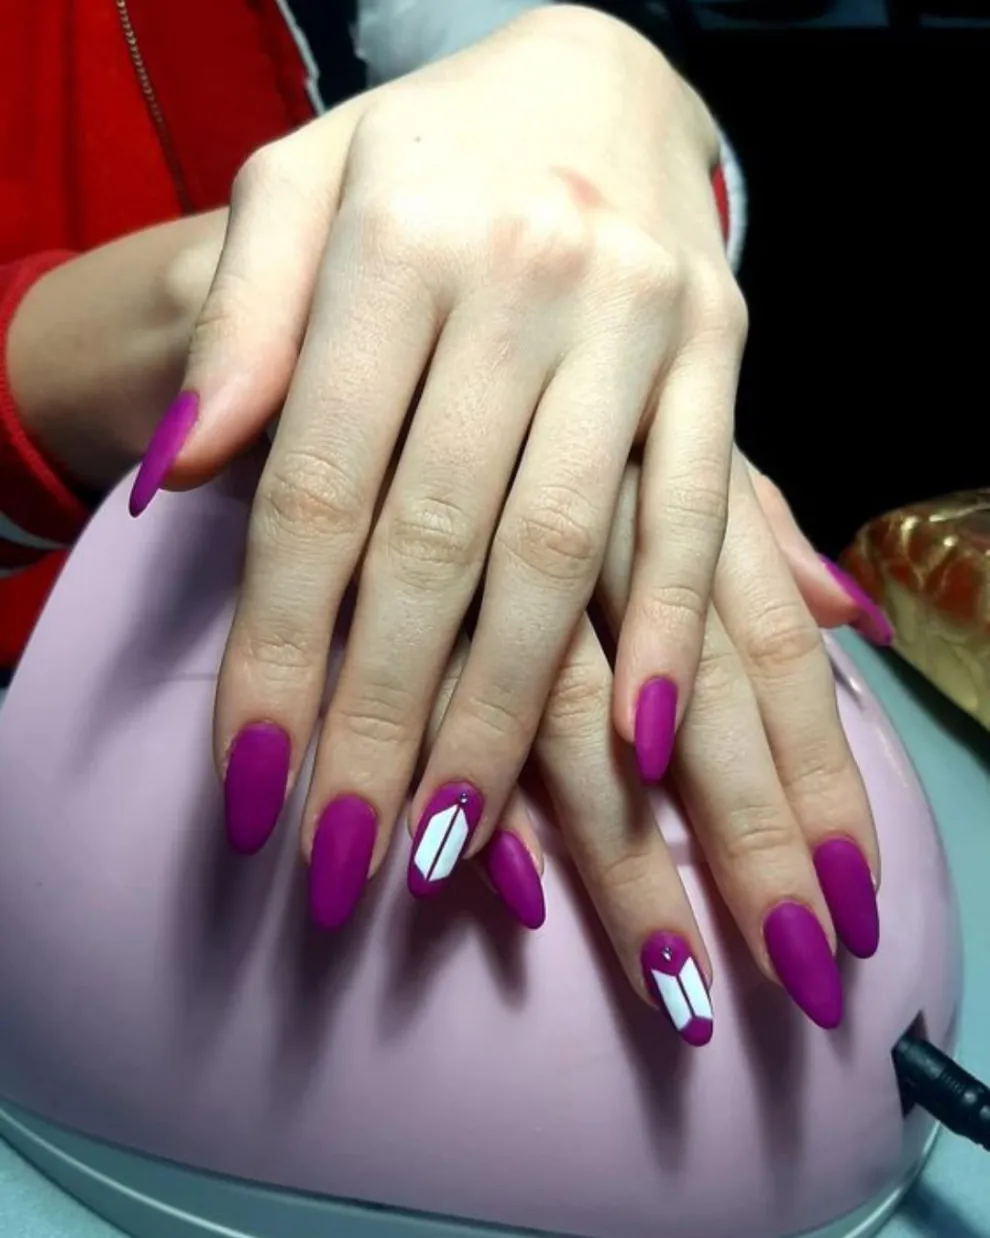 Usando el violeta como base -tono distintivo de ARMY- dibujás el logo de BTS en una de las uñas.